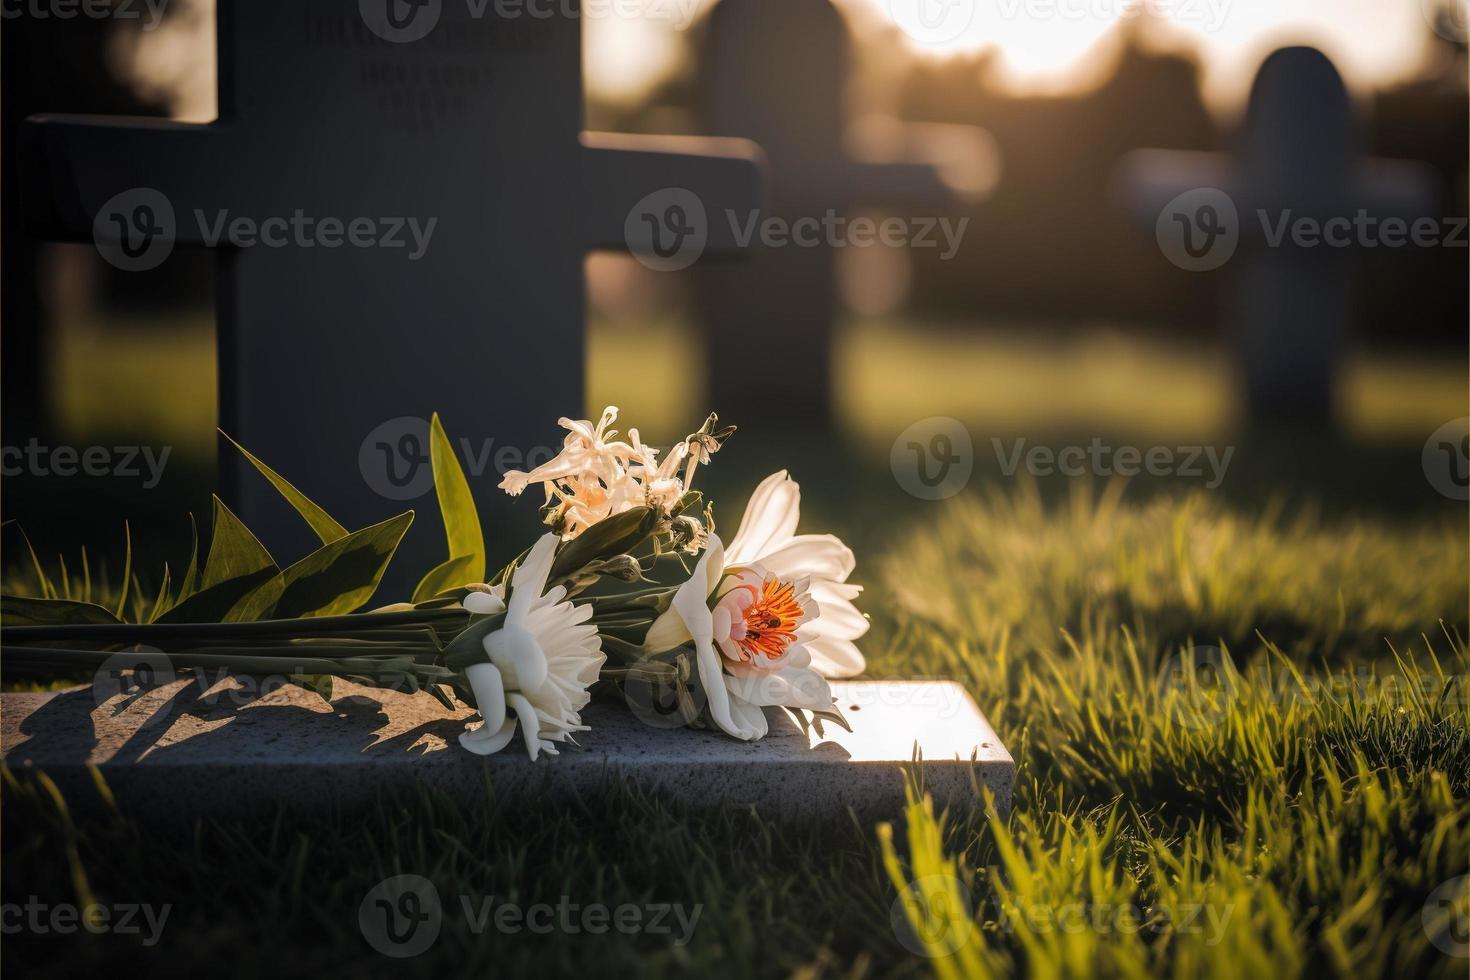 flores funerarias presentadas en un ataúd en caso de que alguien fallezca de cerca foto